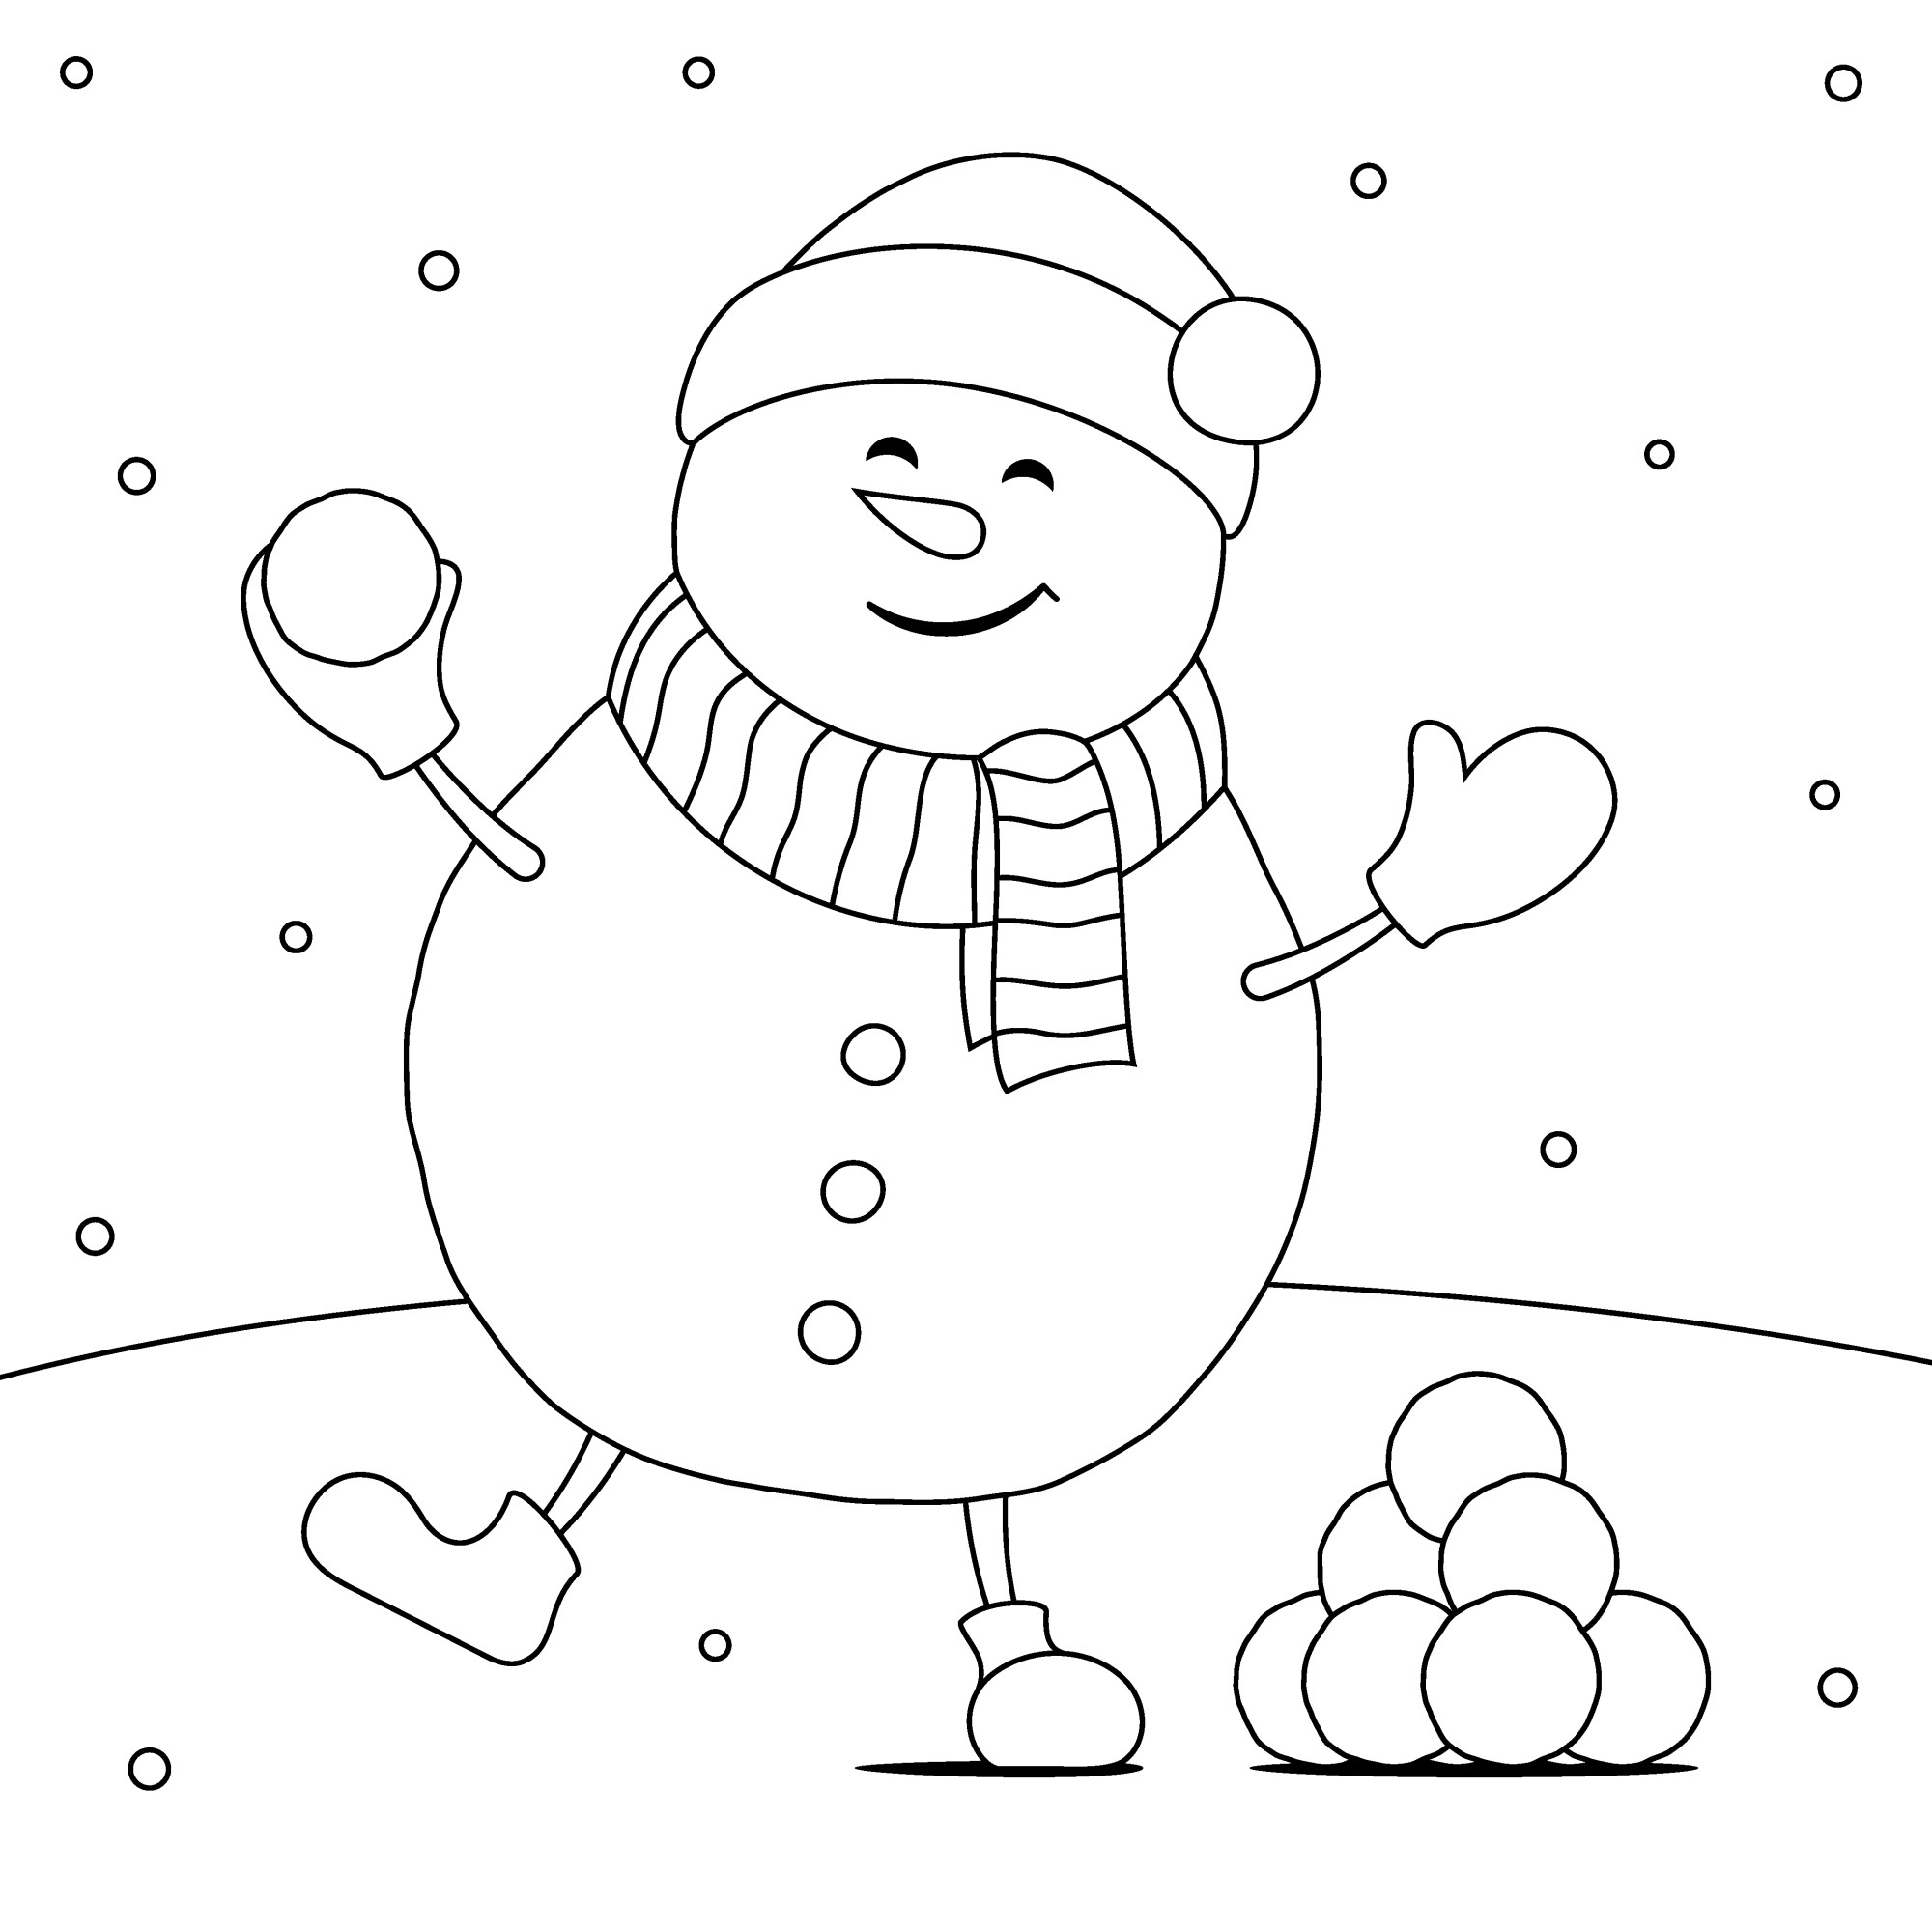 Раскраска для детей: счастливый снеговик играет в снежки